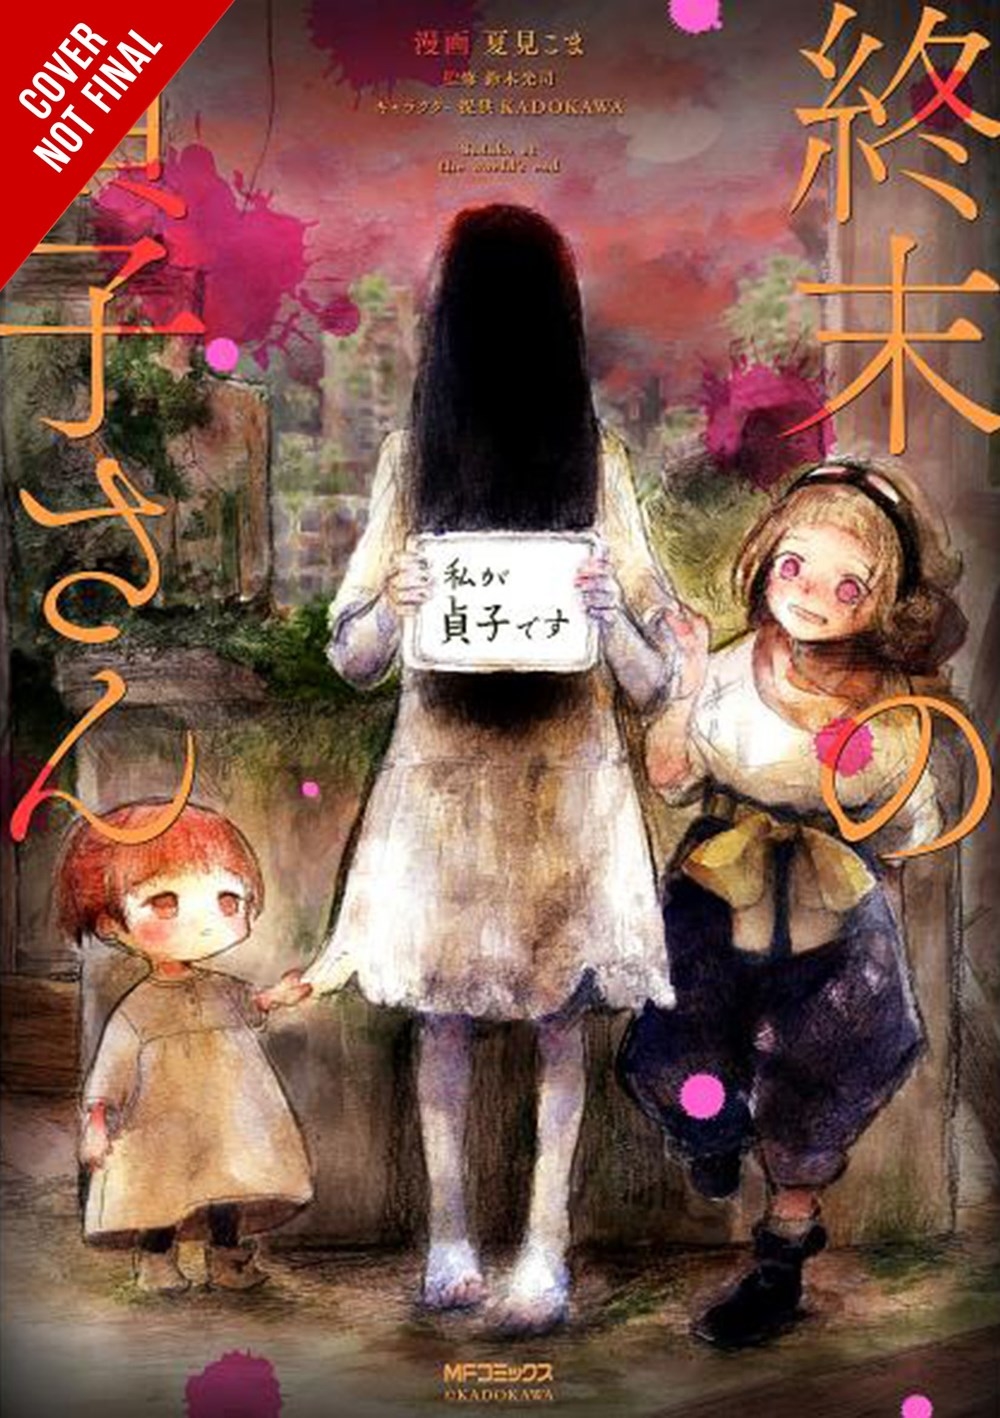 Sadako At End of World Graphic Novel